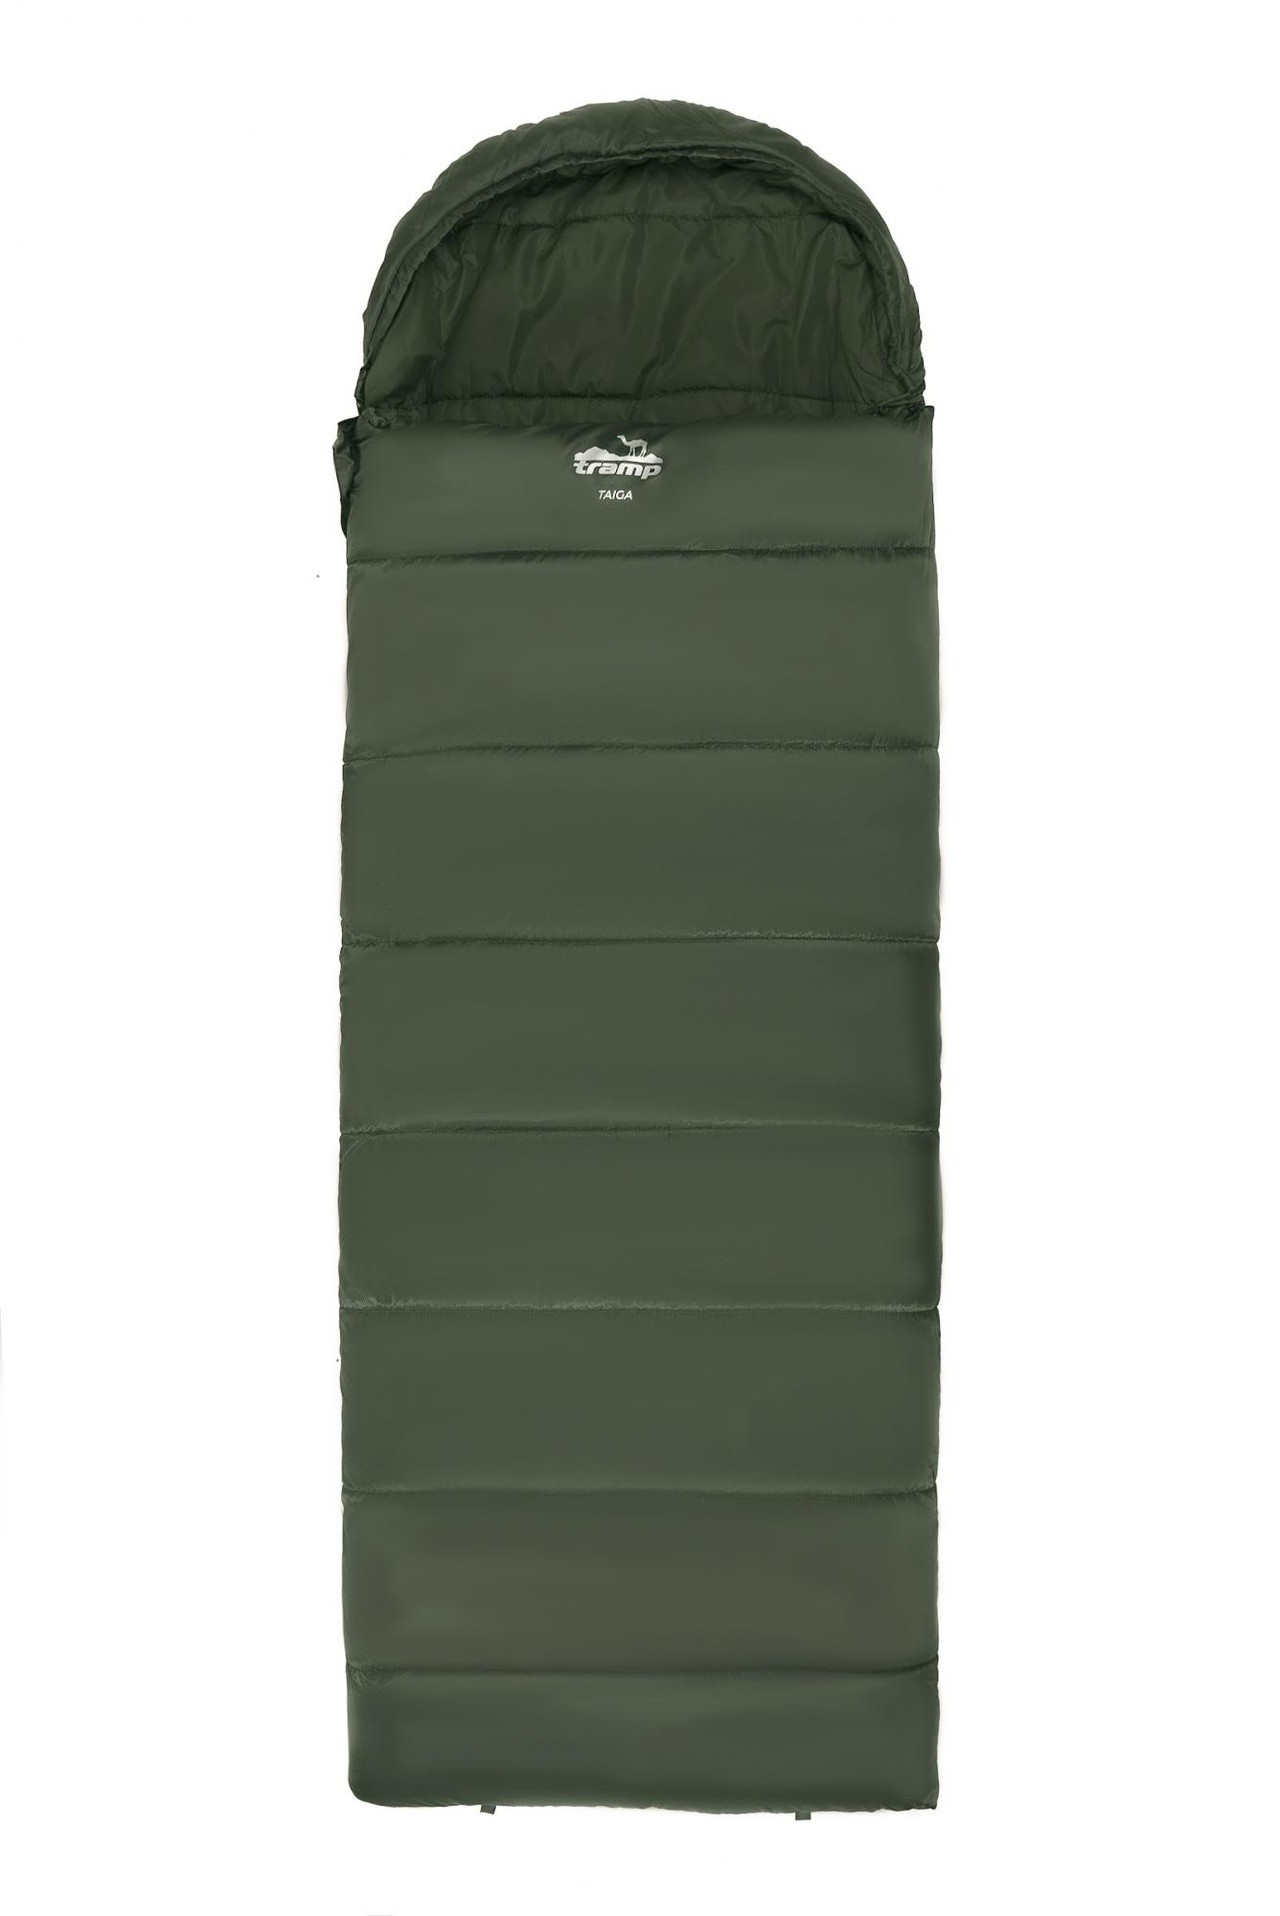 Спальный мешок одеяло Tramp Taiga 200XL 220*100 см (-5°C) - фото